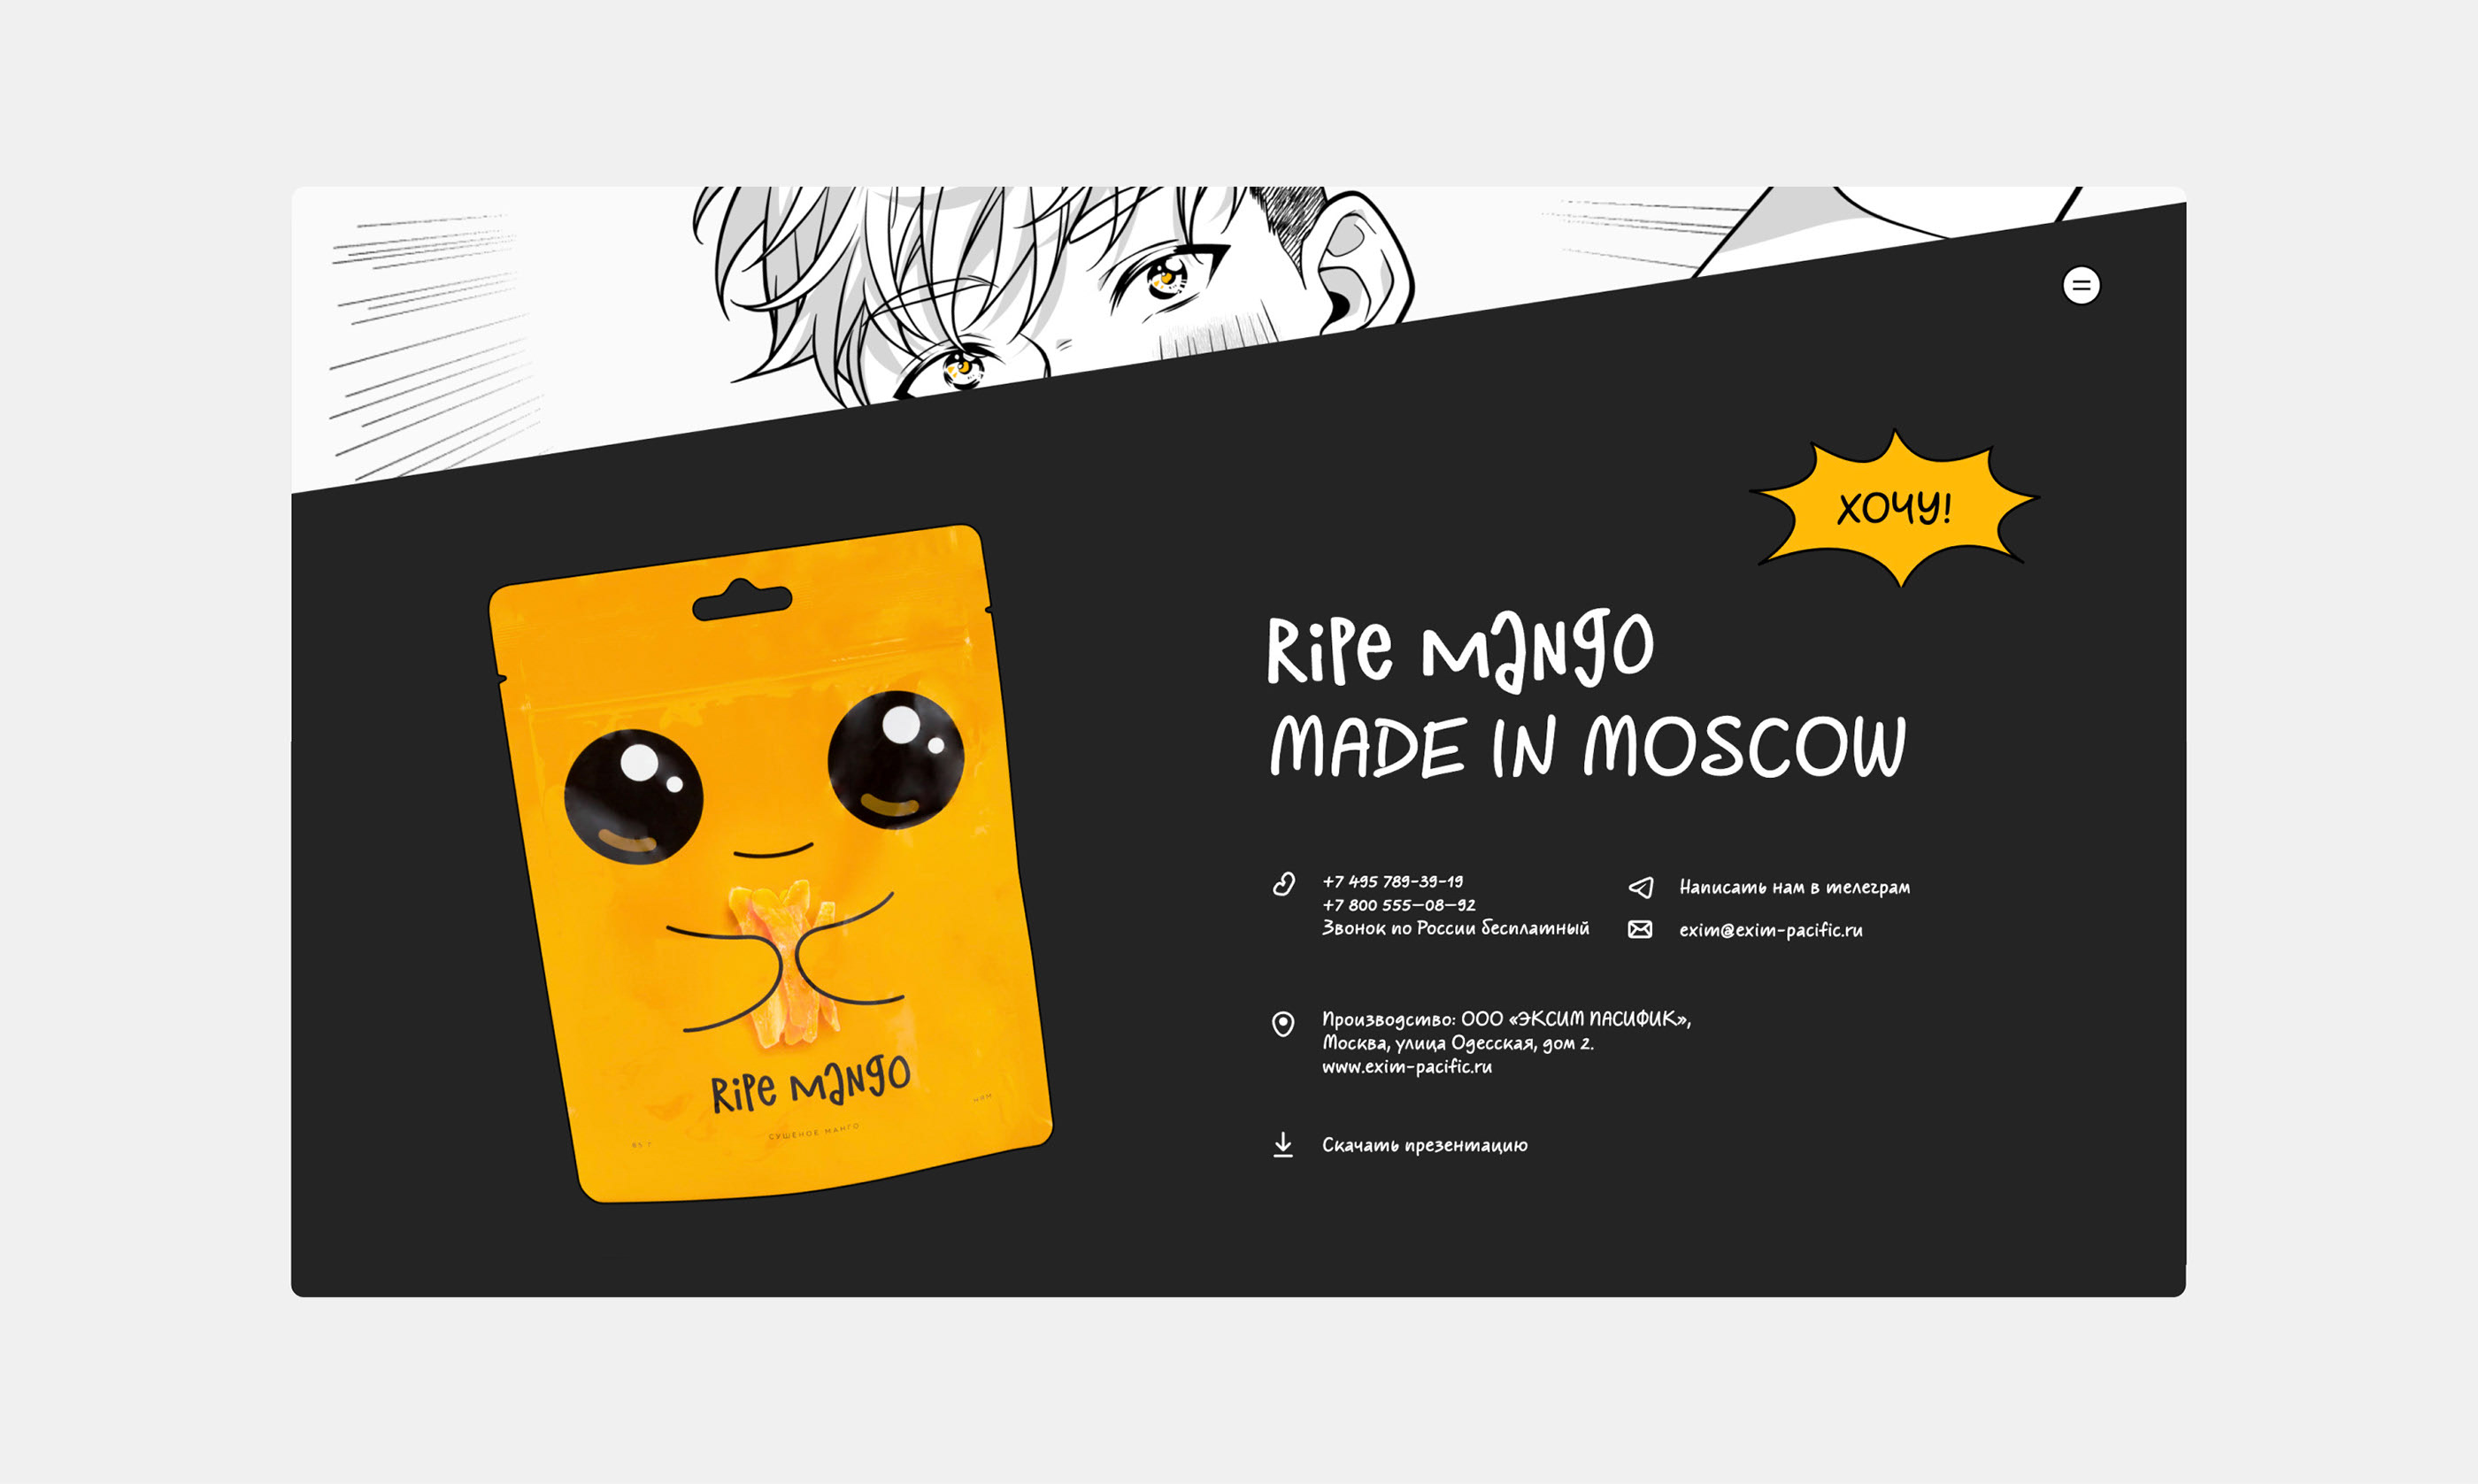 Ripe Mango — Изображение №22 — Интерфейсы, Иллюстрация на Dprofile